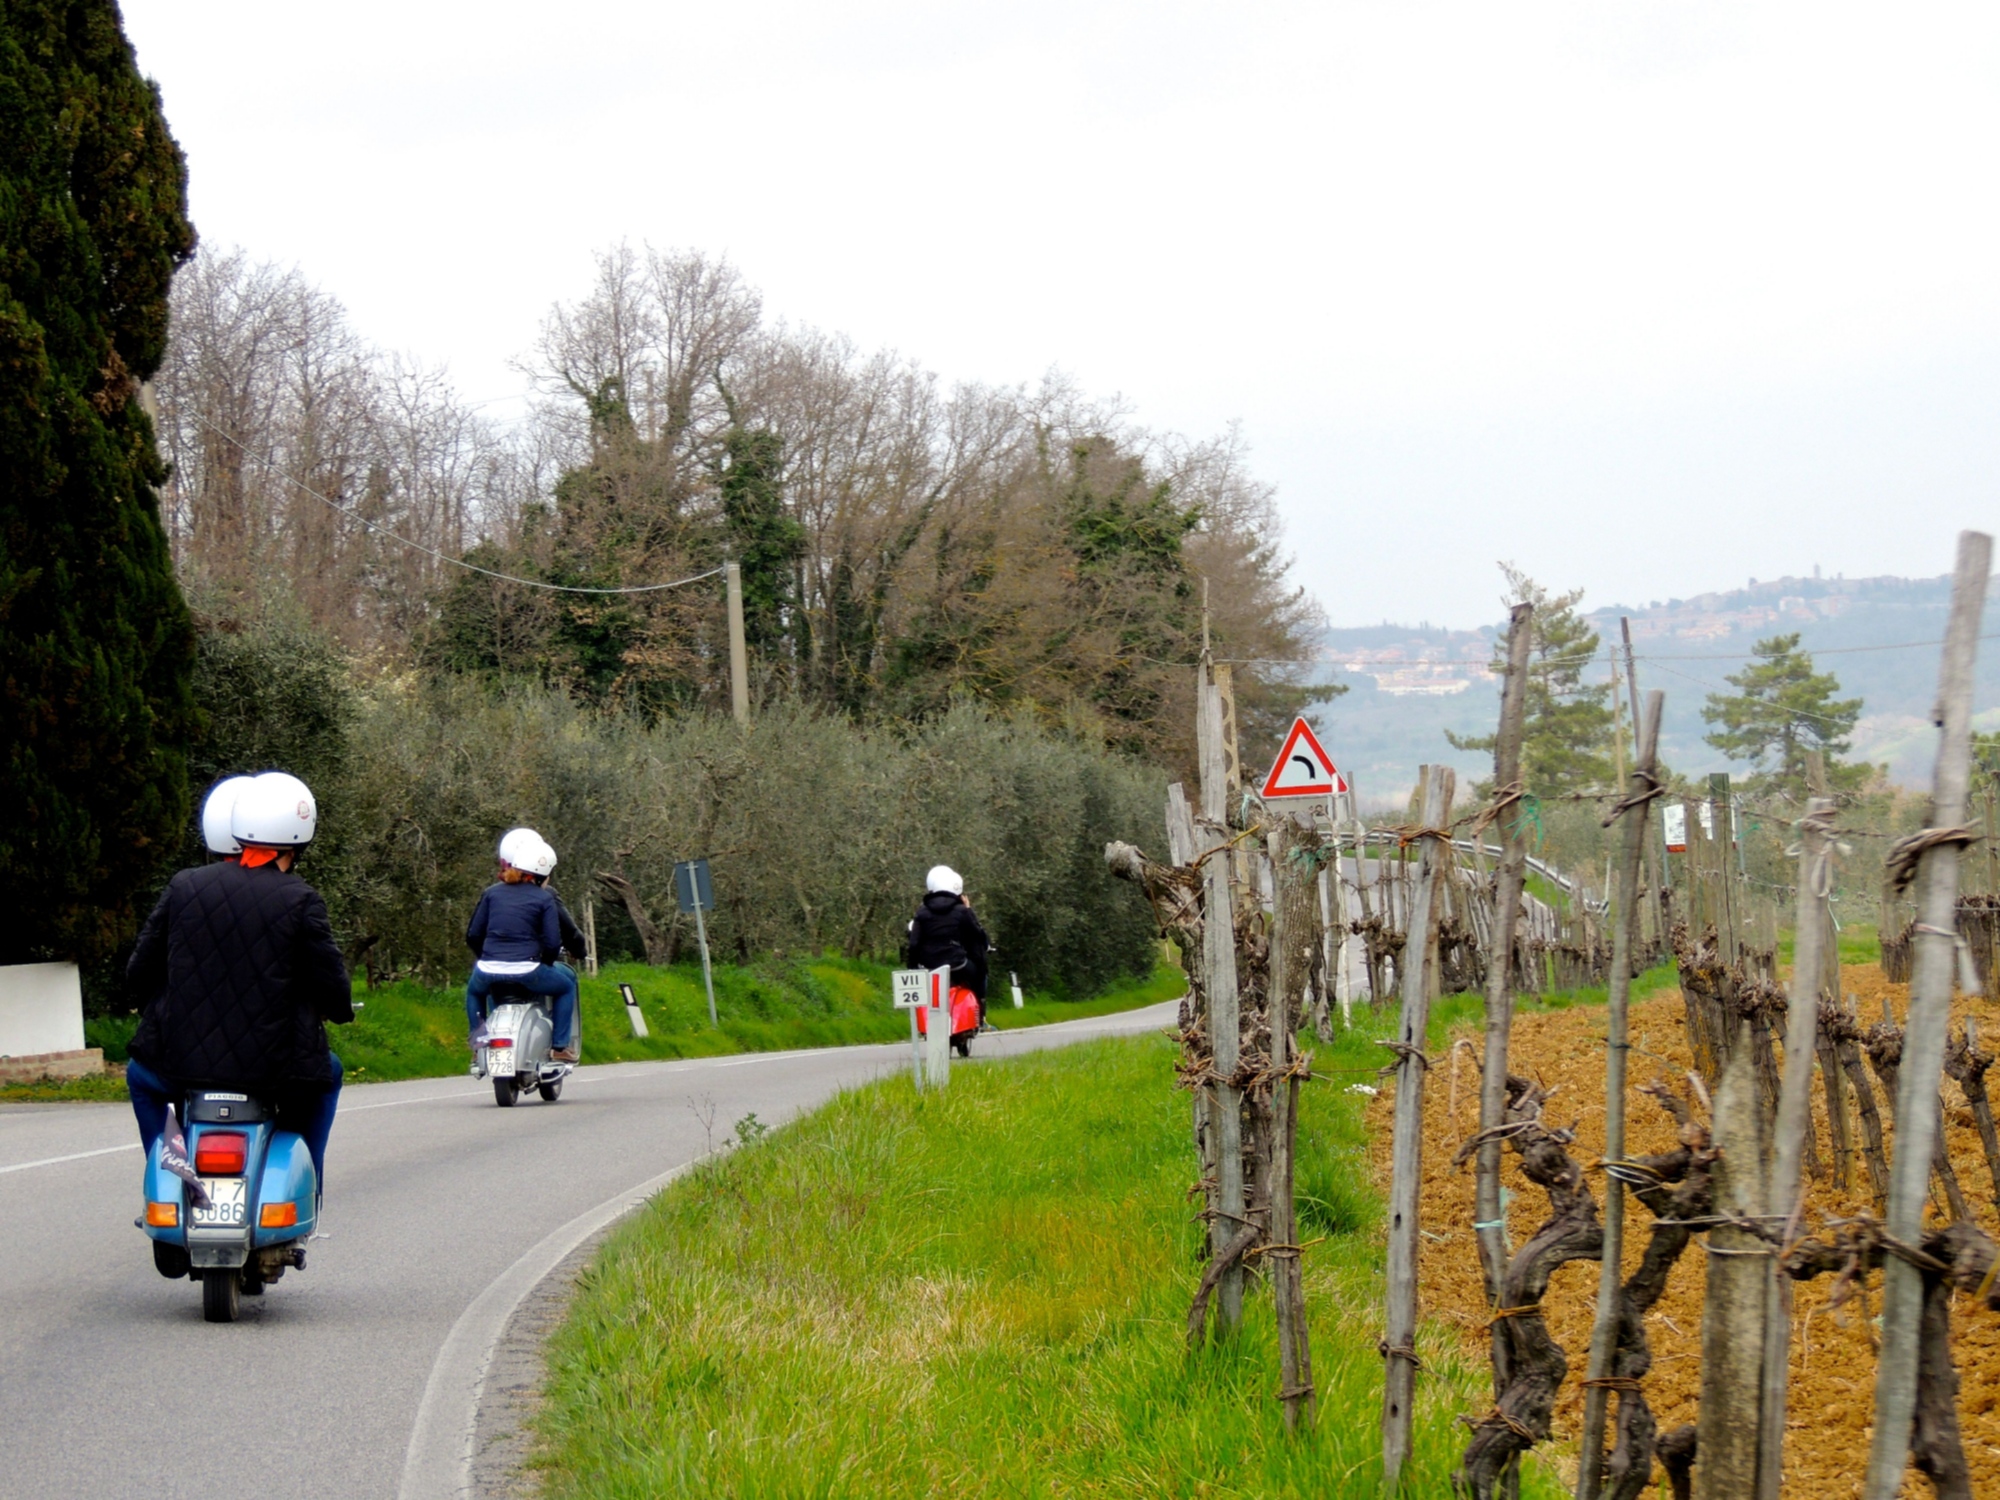 Vespa in Toscana: viaggio in moto in campagna